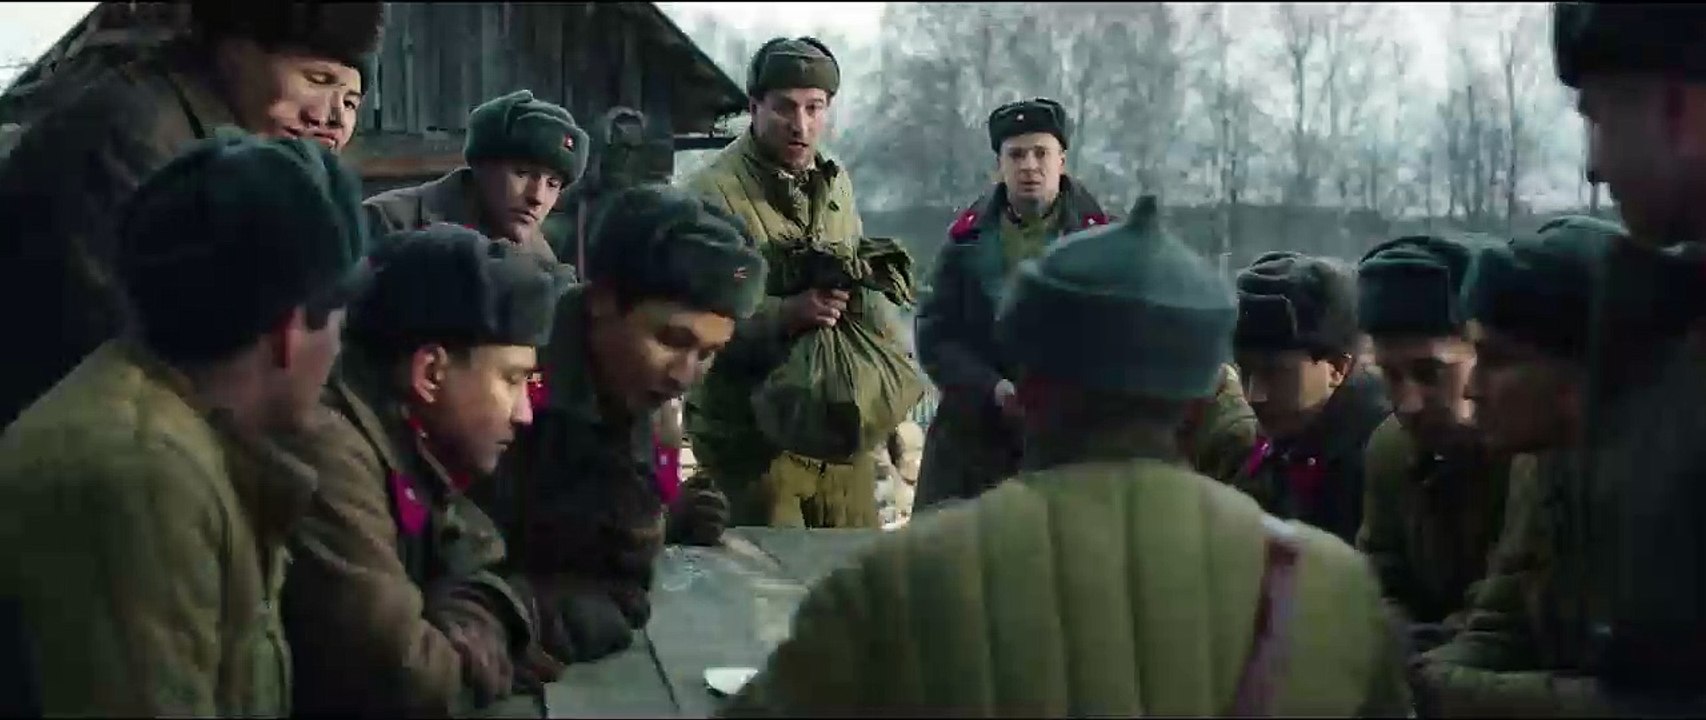 28 Soldiers - Die Panzerschlacht Trailer DF